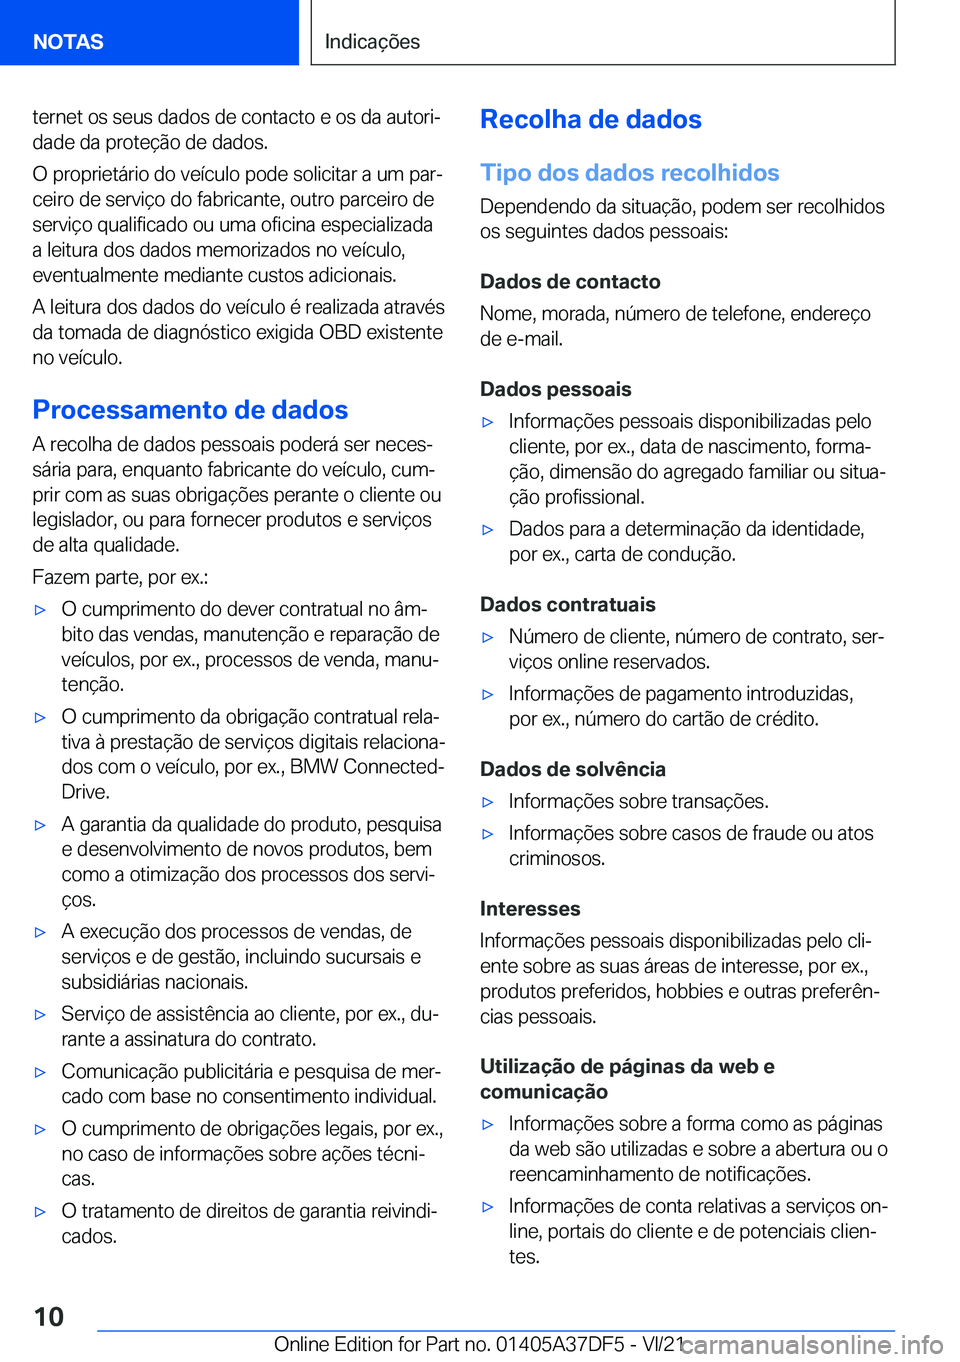 BMW M8 GRAN COUPE 2022  Manual do condutor (in Portuguese) �t�e�r�n�e�t��o�s��s�e�u�s��d�a�d�o�s��d�e��c�o�n�t�a�c�t�o��e��o�s��d�a��a�u�t�o�r�iª
�d�a�d�e��d�a��p�r�o�t�e�